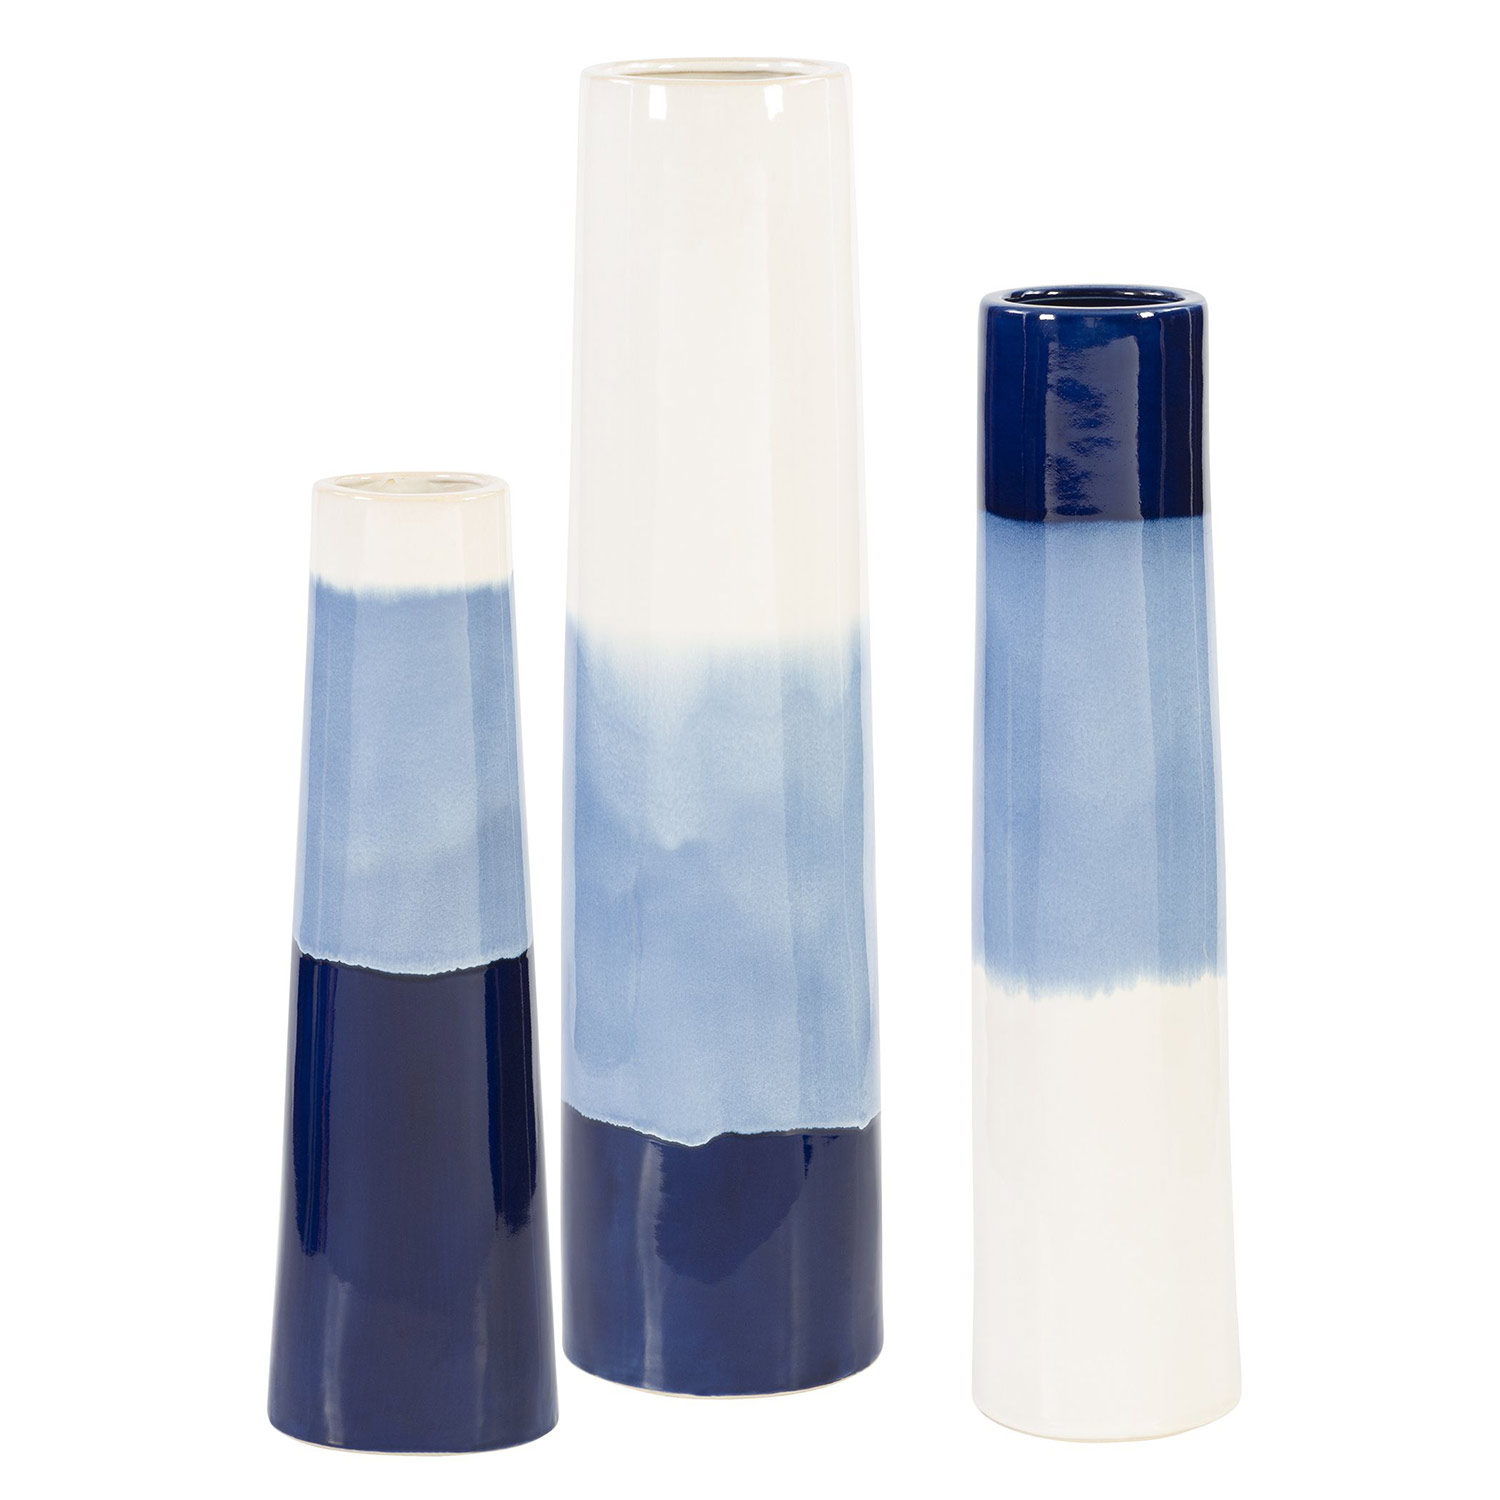 Uttermost Sconset Vases - Set of 3 - White/Blue